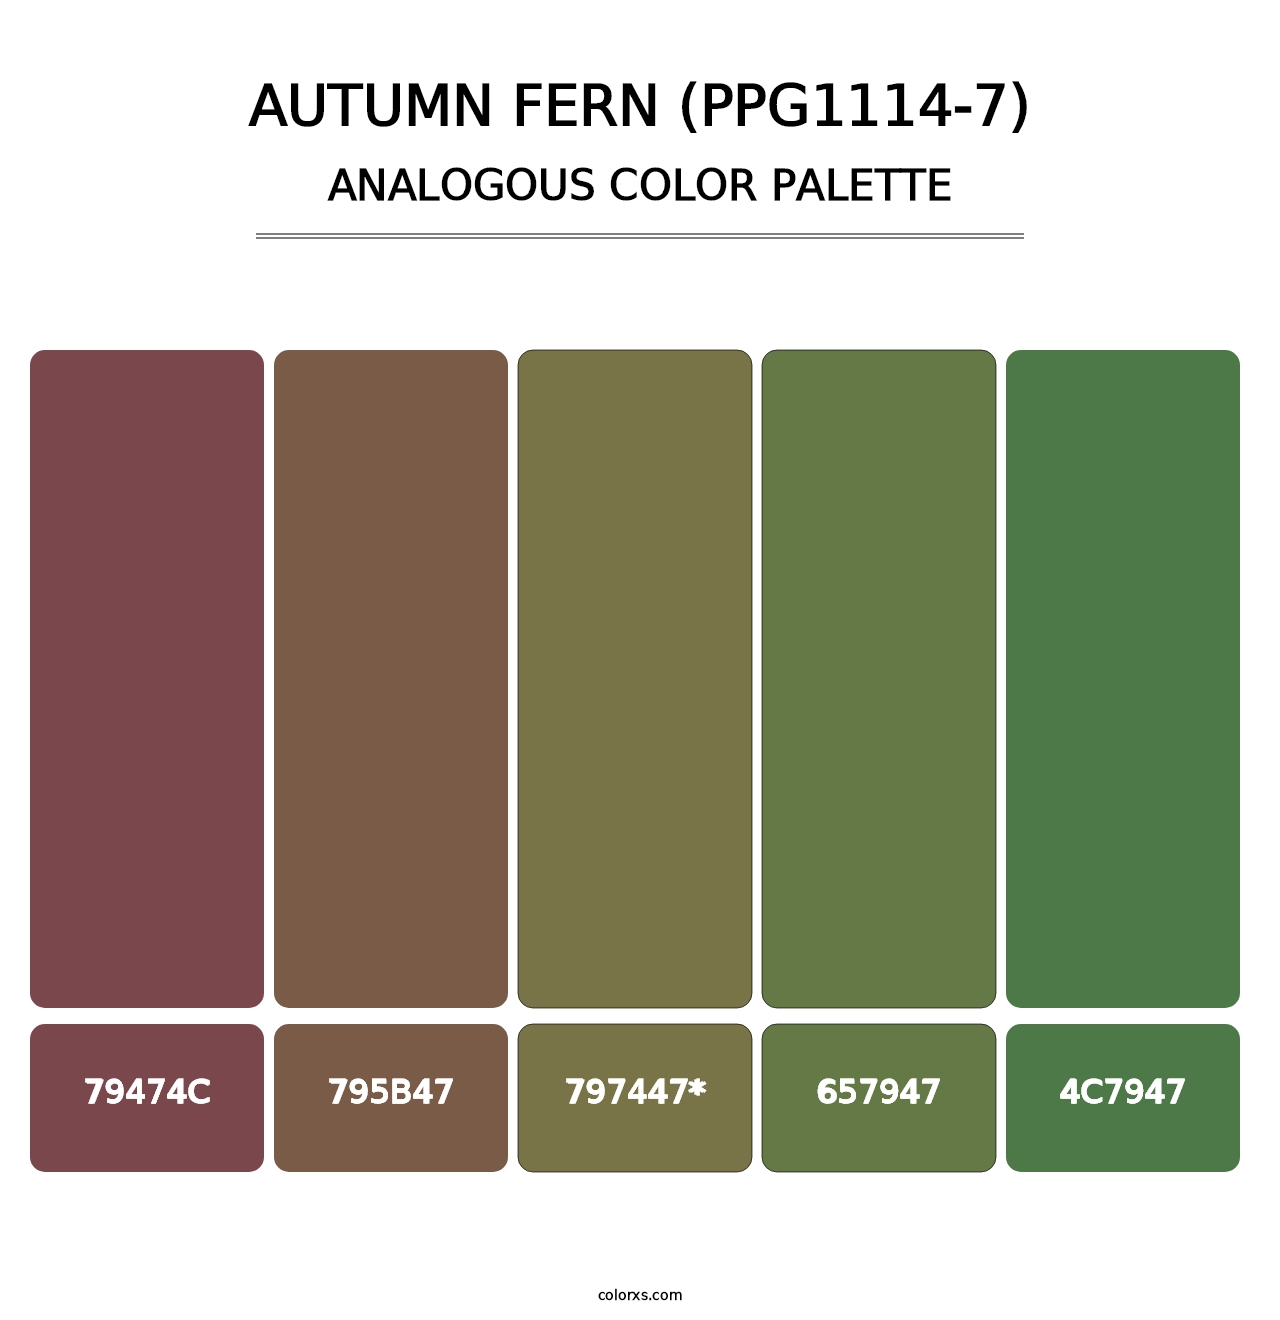 Autumn Fern (PPG1114-7) - Analogous Color Palette